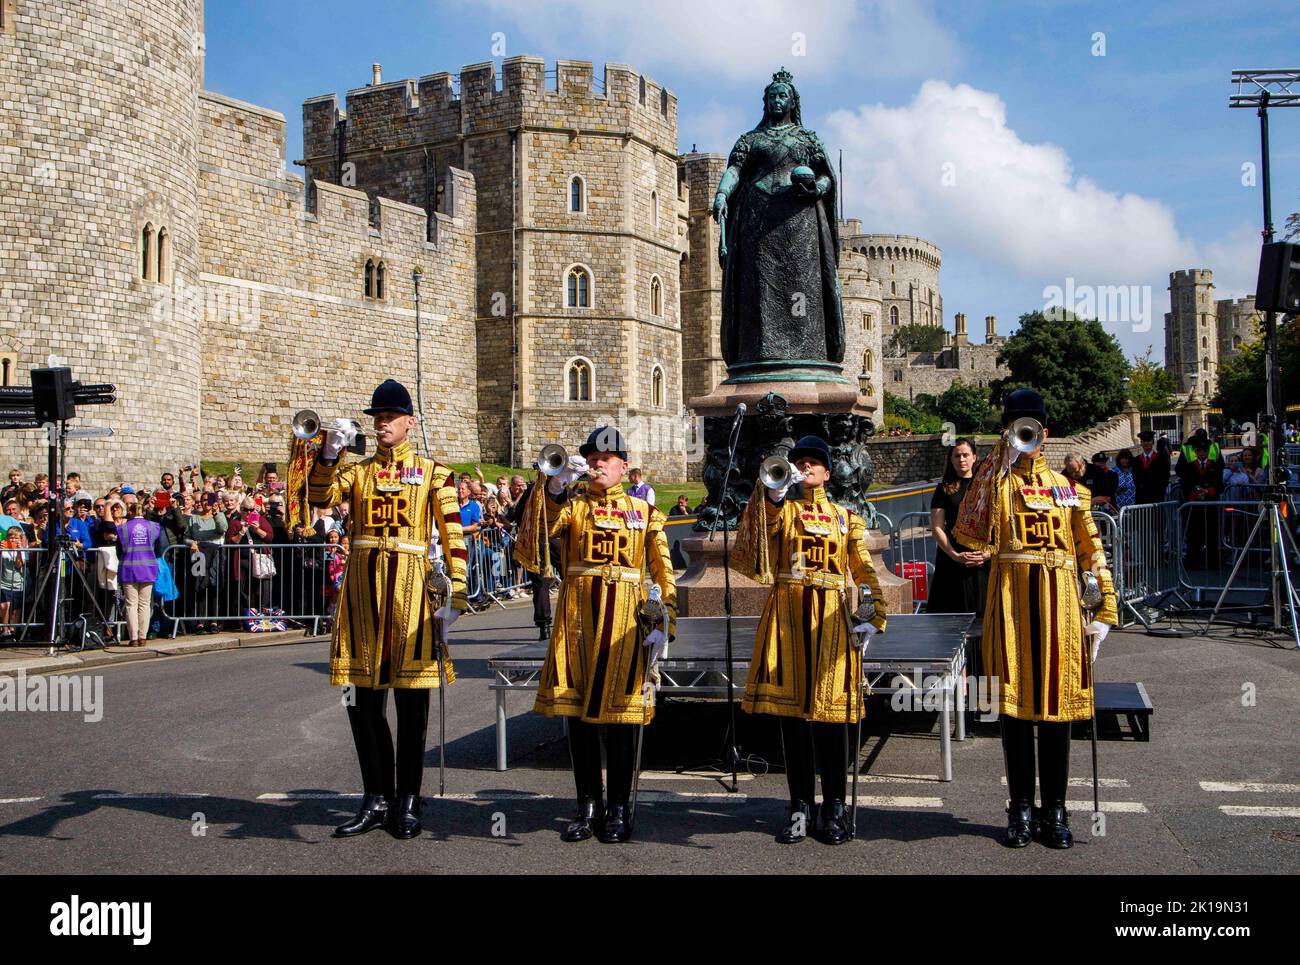 La foule a chanté l'hymne national et a donné trois acclamations au roi Charles III lors d'une cérémonie de proclamation à Windsor à la statue de la reine Victoria. Banque D'Images